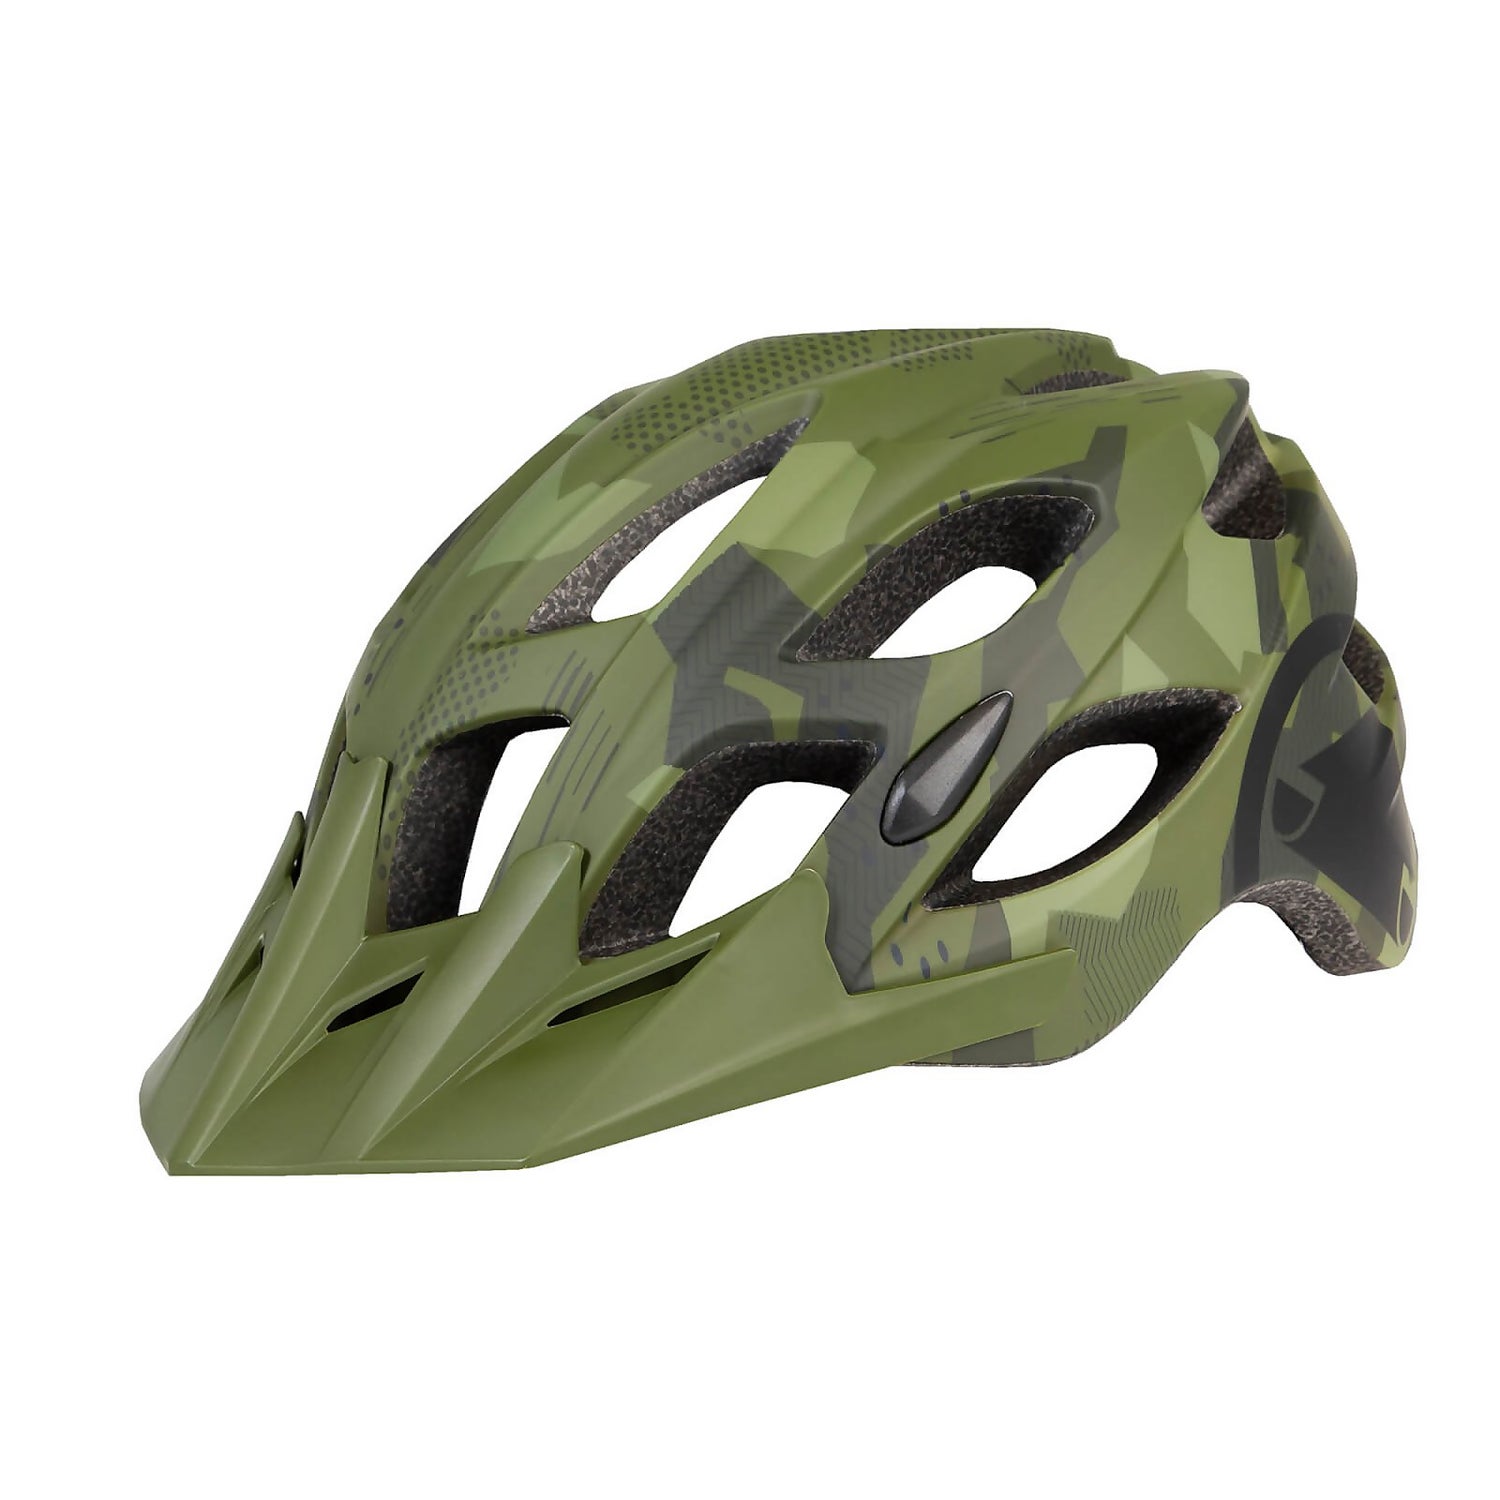 Hummvee Helmet - Green - S-M